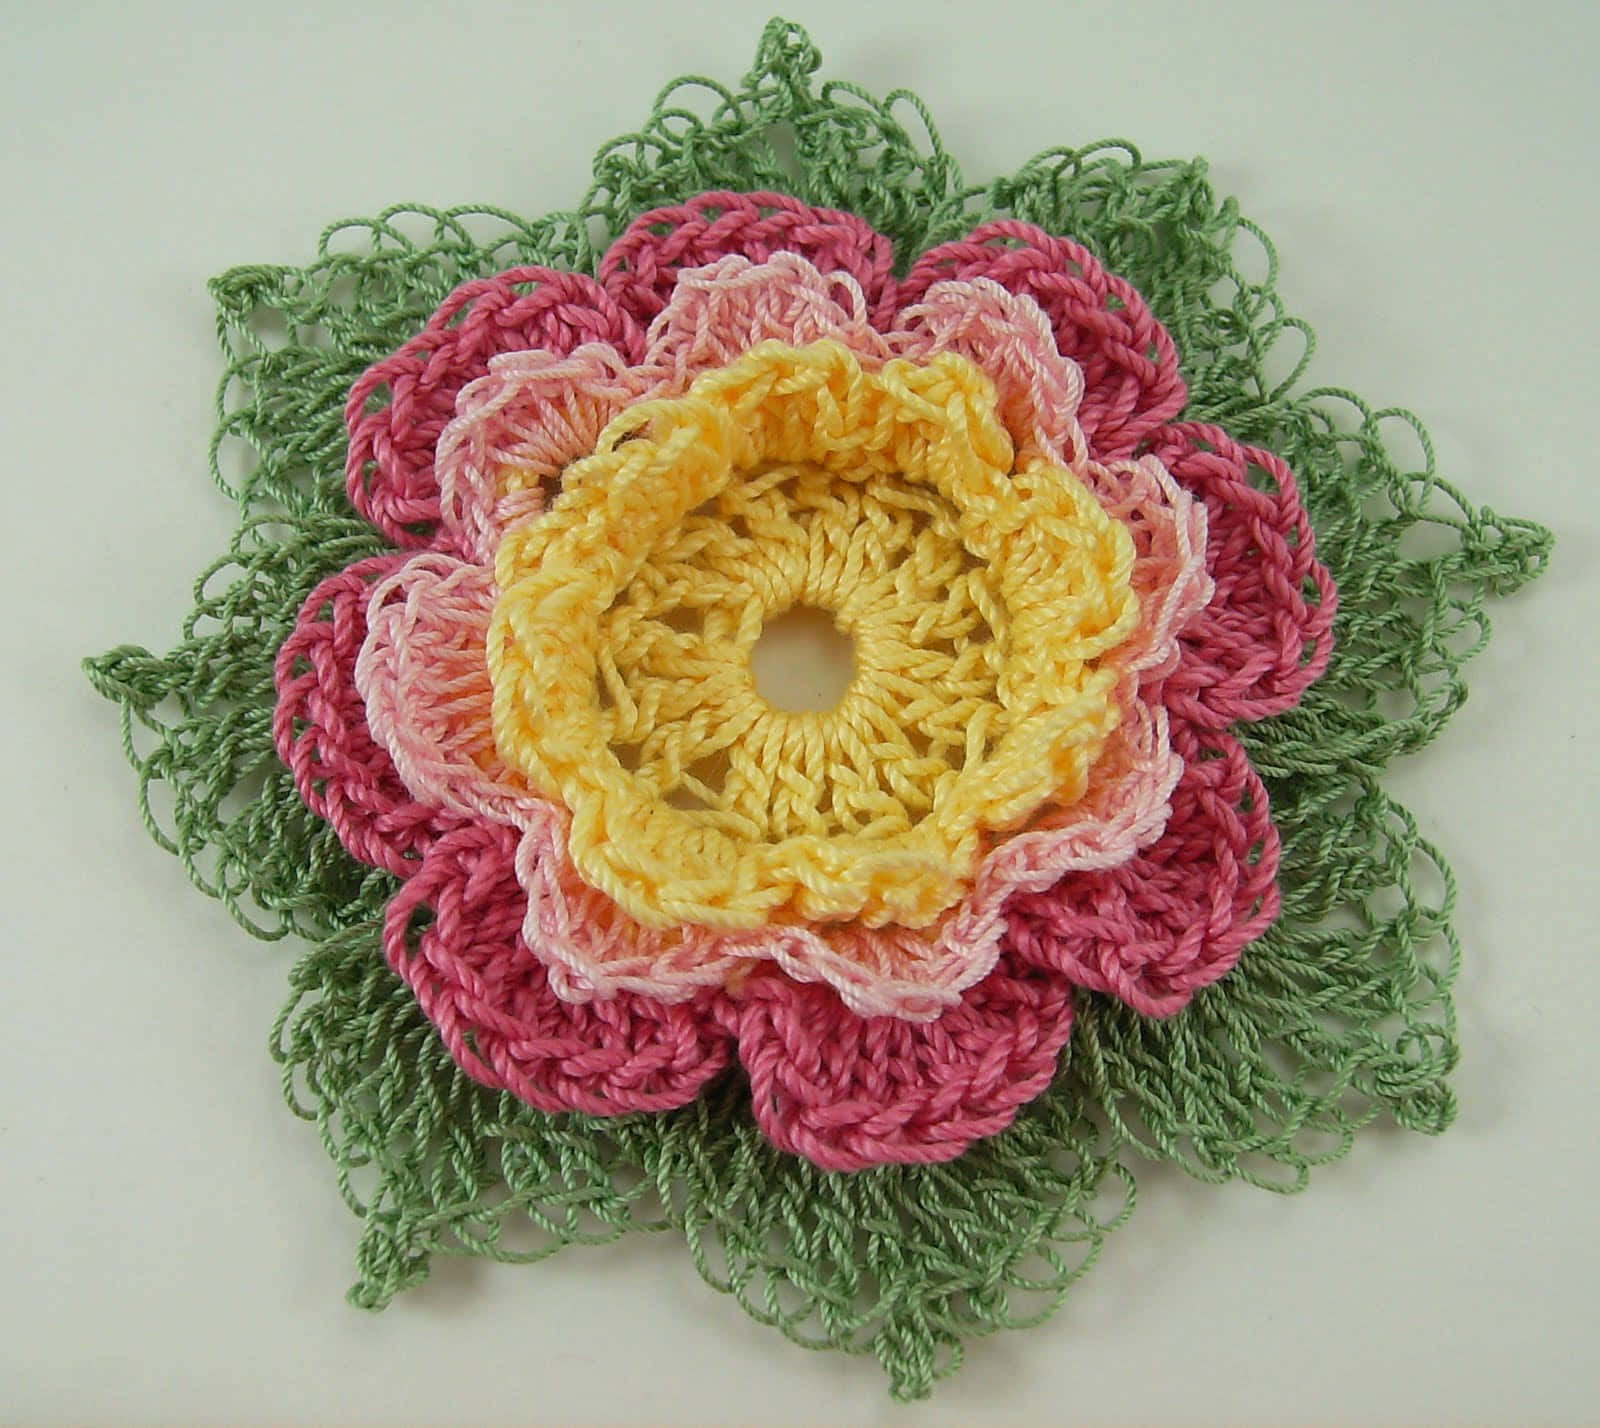 Imagenbonita De Flores En Crochet